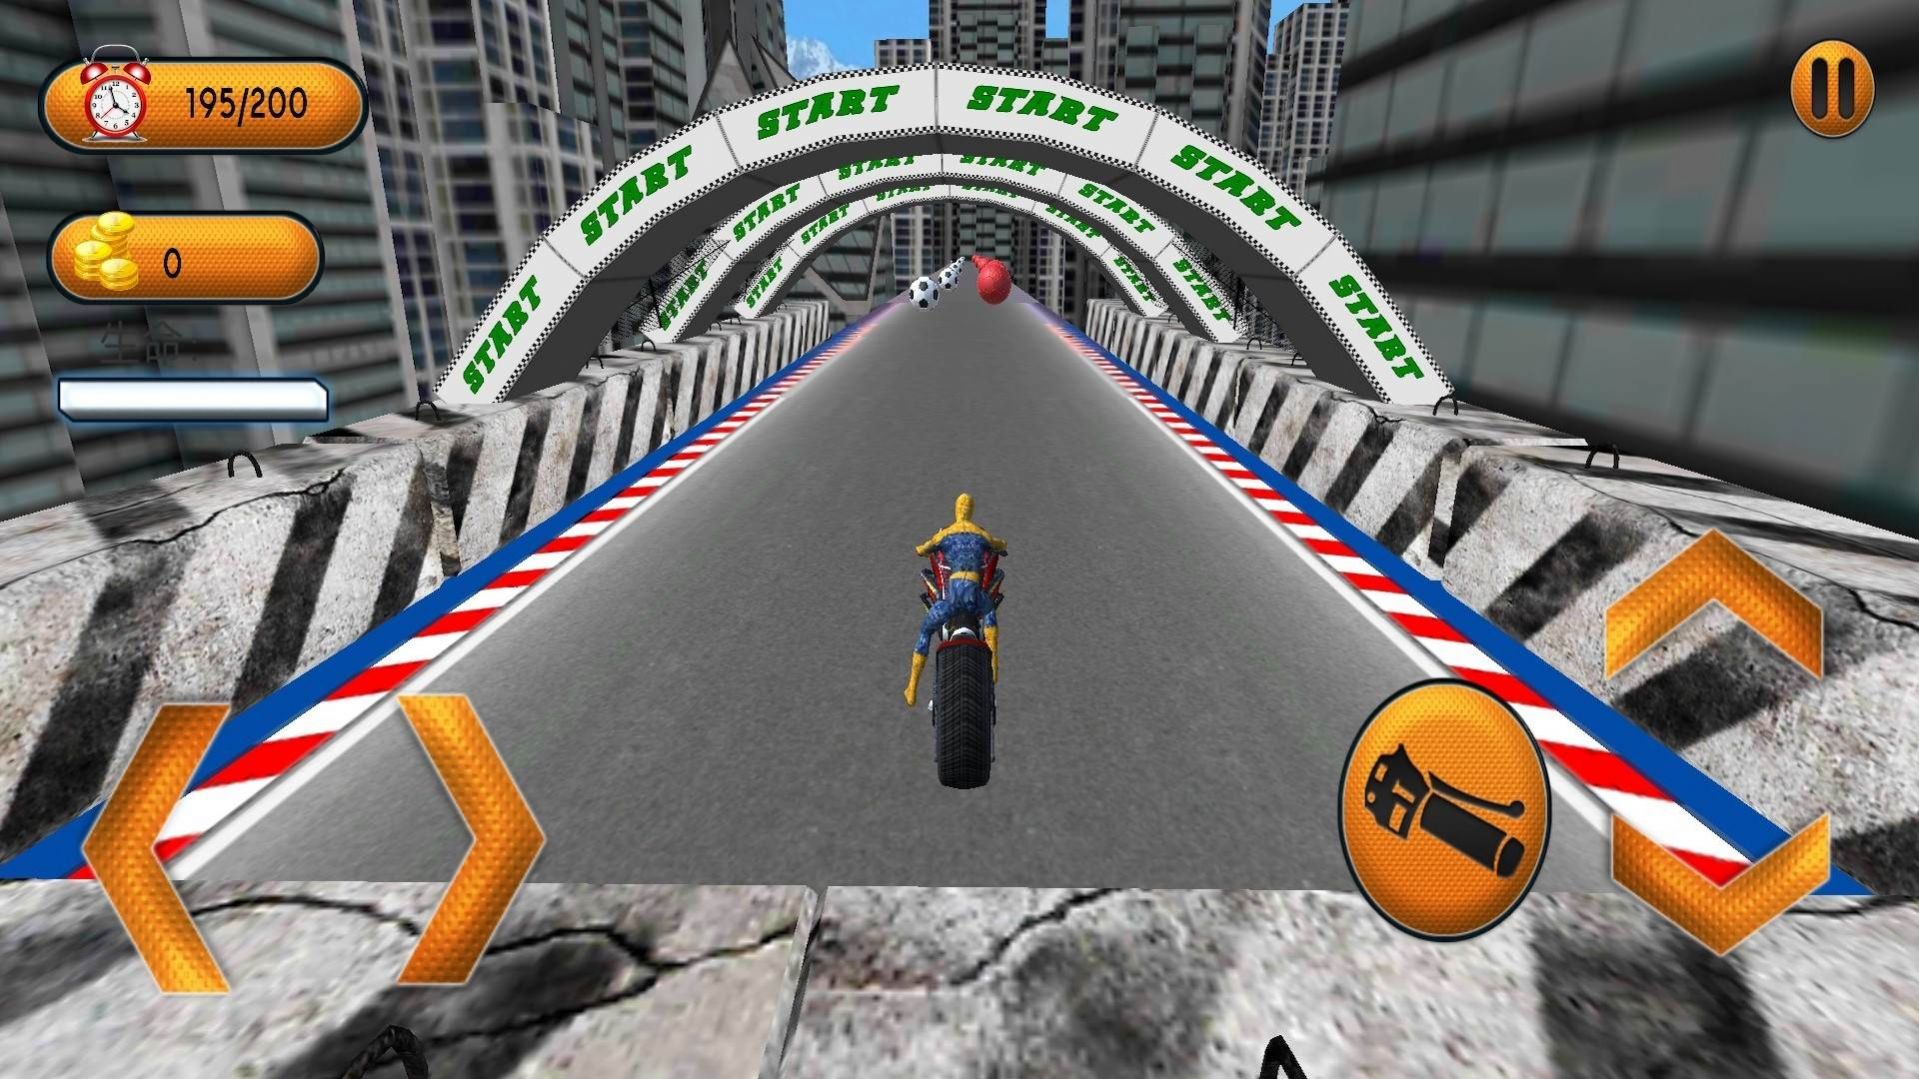 超级英雄坡道车游戏下载,超级英雄坡道车游戏最新版 v3.1